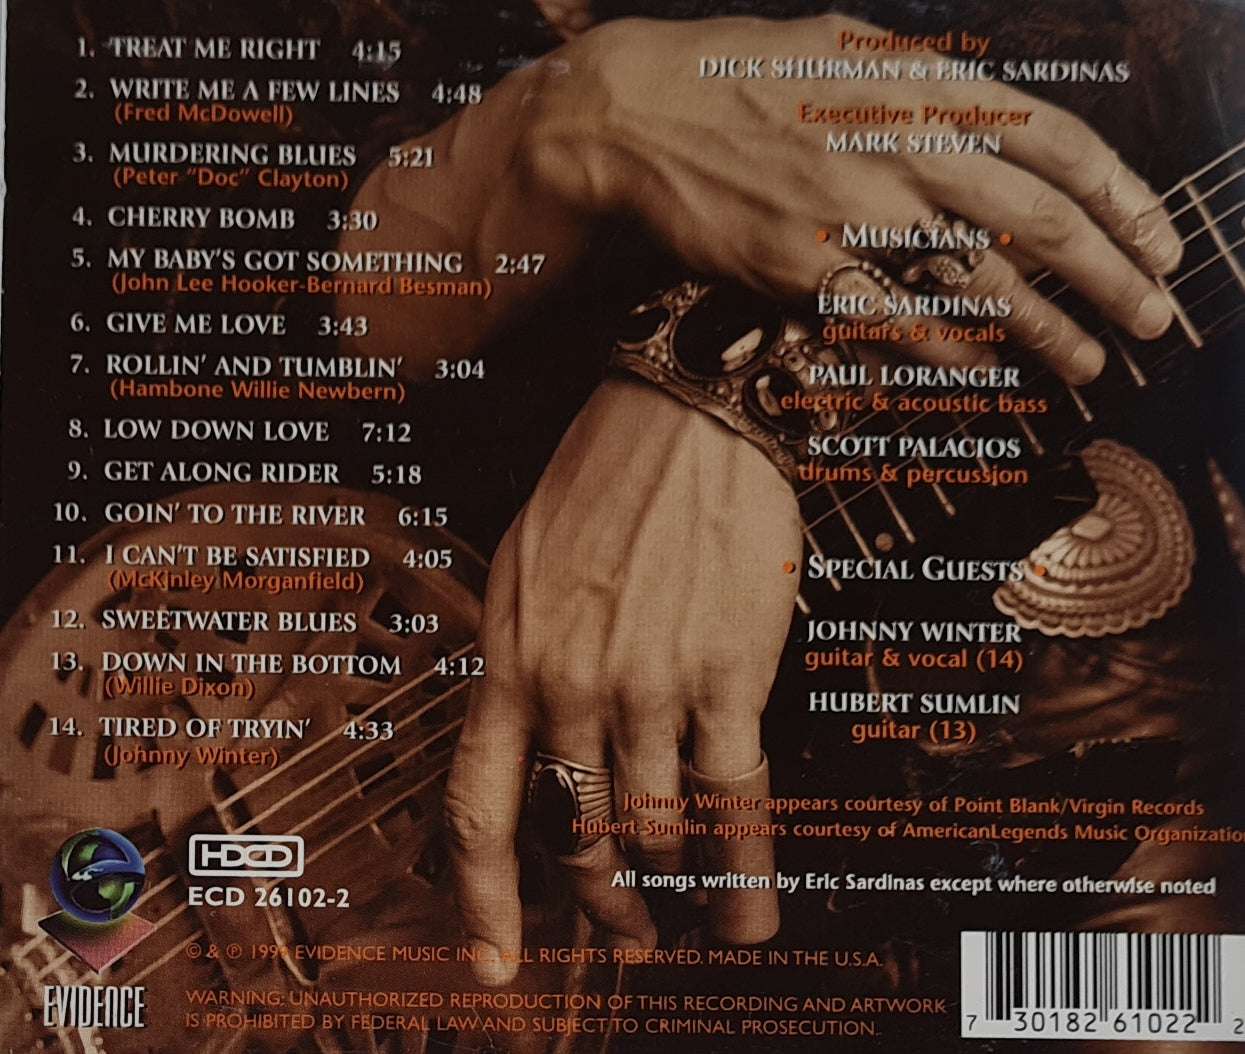 Eric Sardinas - Treat Me Right (CD)